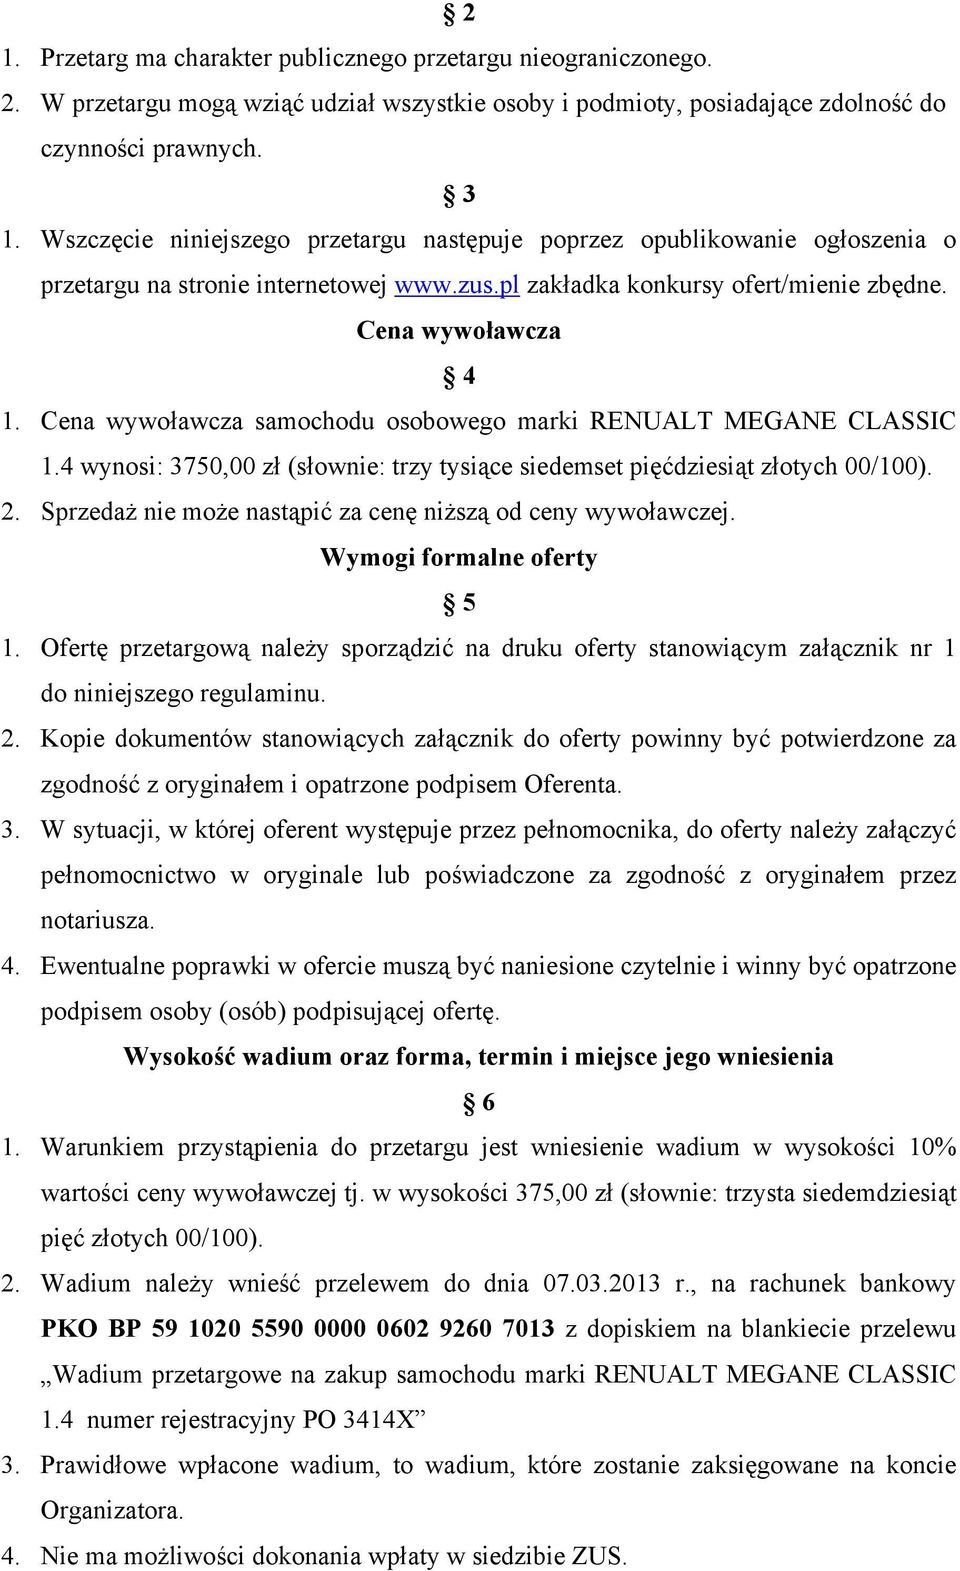 Cena wywoławcza samochodu osobowego marki RENUALT MEGANE CLASSIC 1.4 wynosi: 3750,00 zł (słownie: trzy tysiące siedemset pięćdziesiąt złotych 00/100). 2.